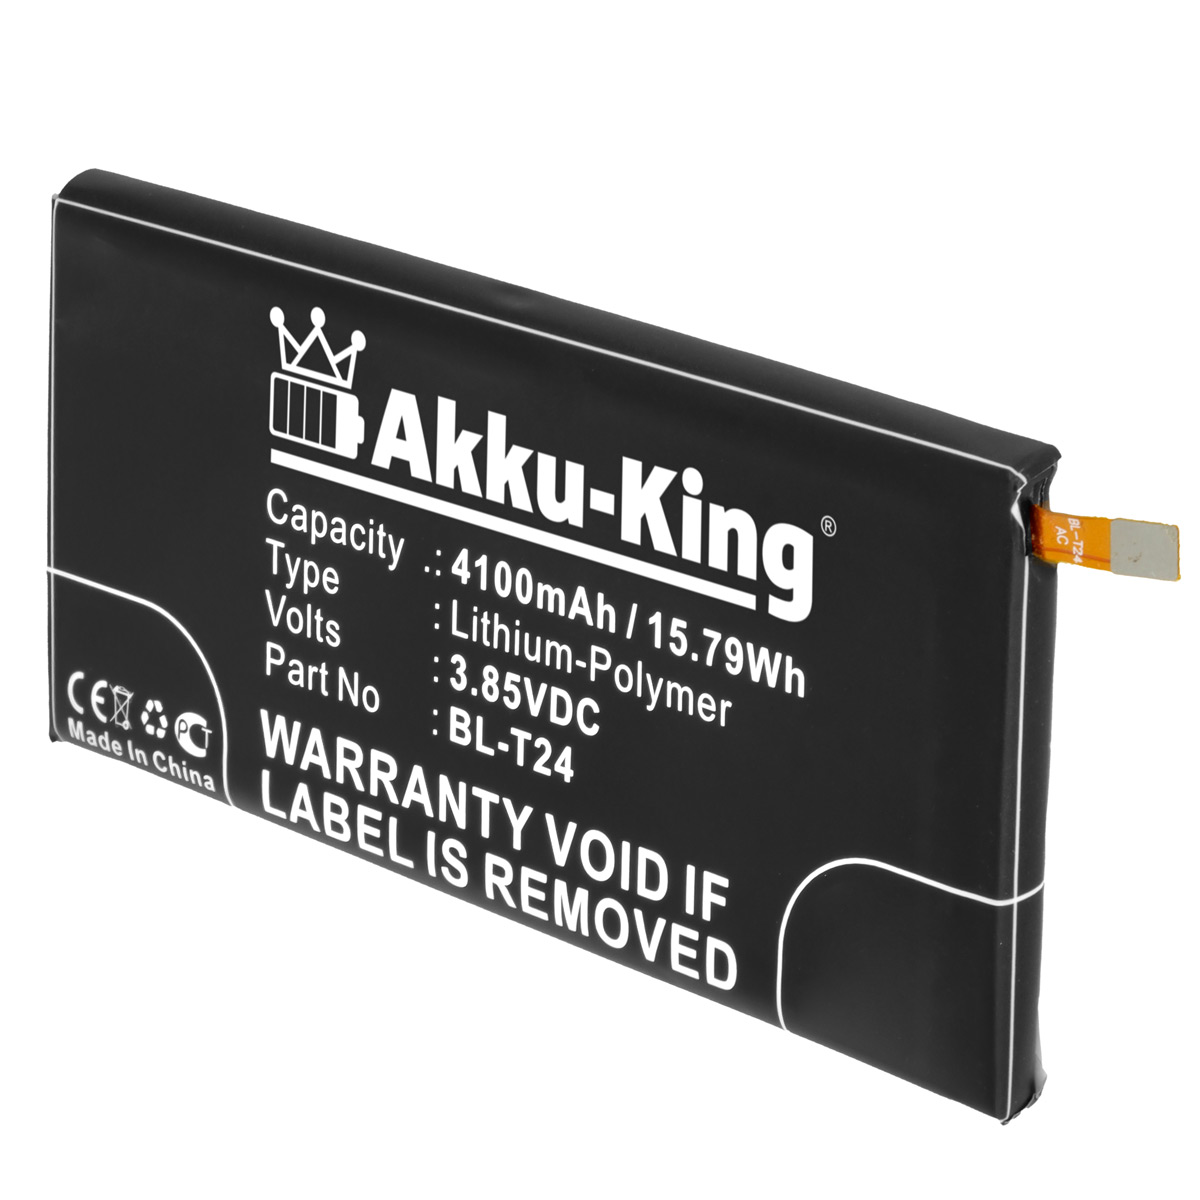 AKKU-KING Akku kompatibel mit Handy-Akku, LG Volt, BL-T24 4100mAh Li-Polymer 3.85